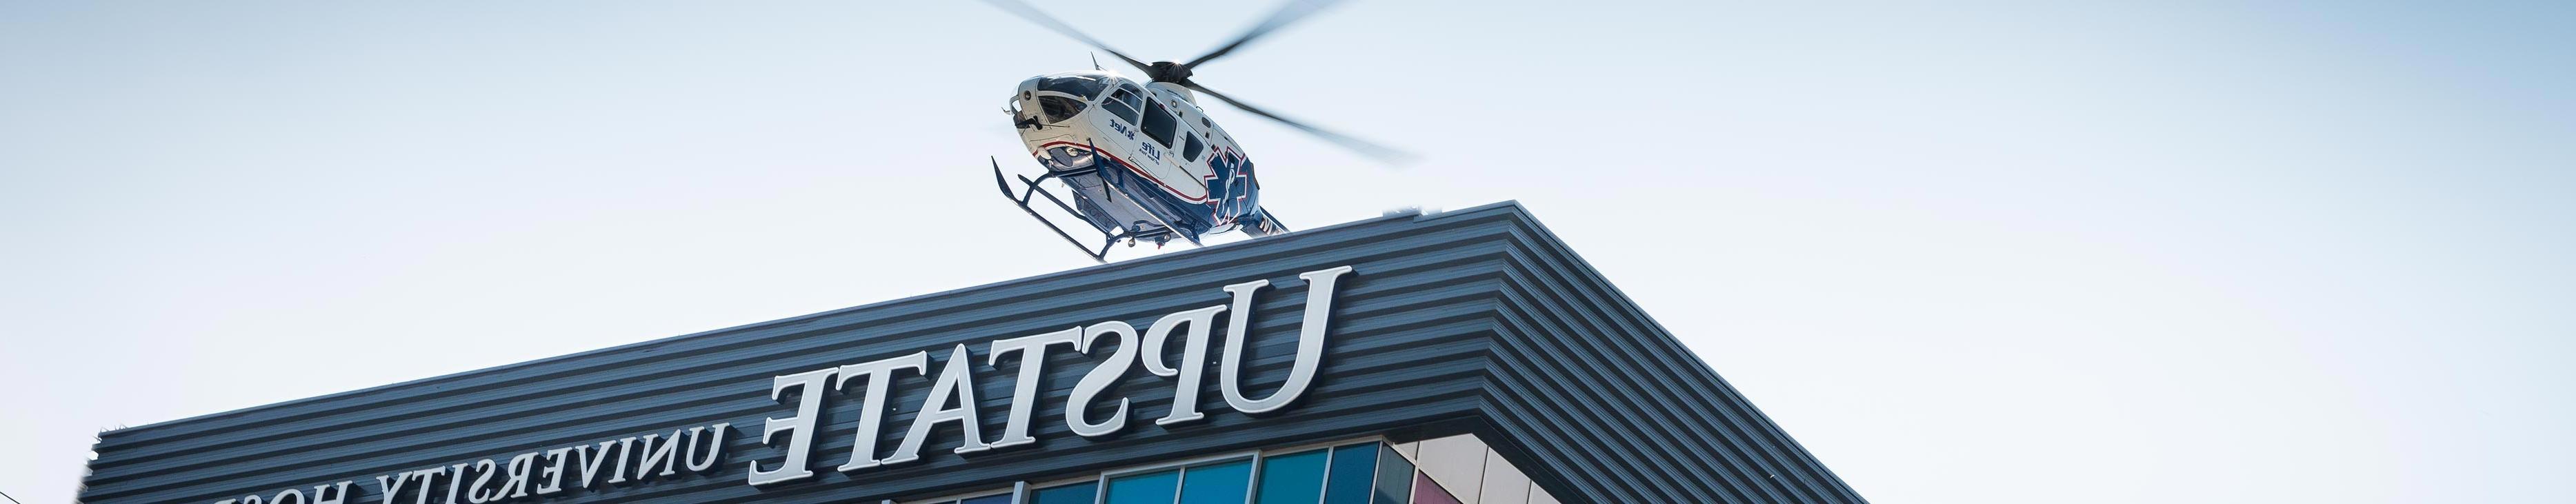 直升飞机抵达上州立大学医院